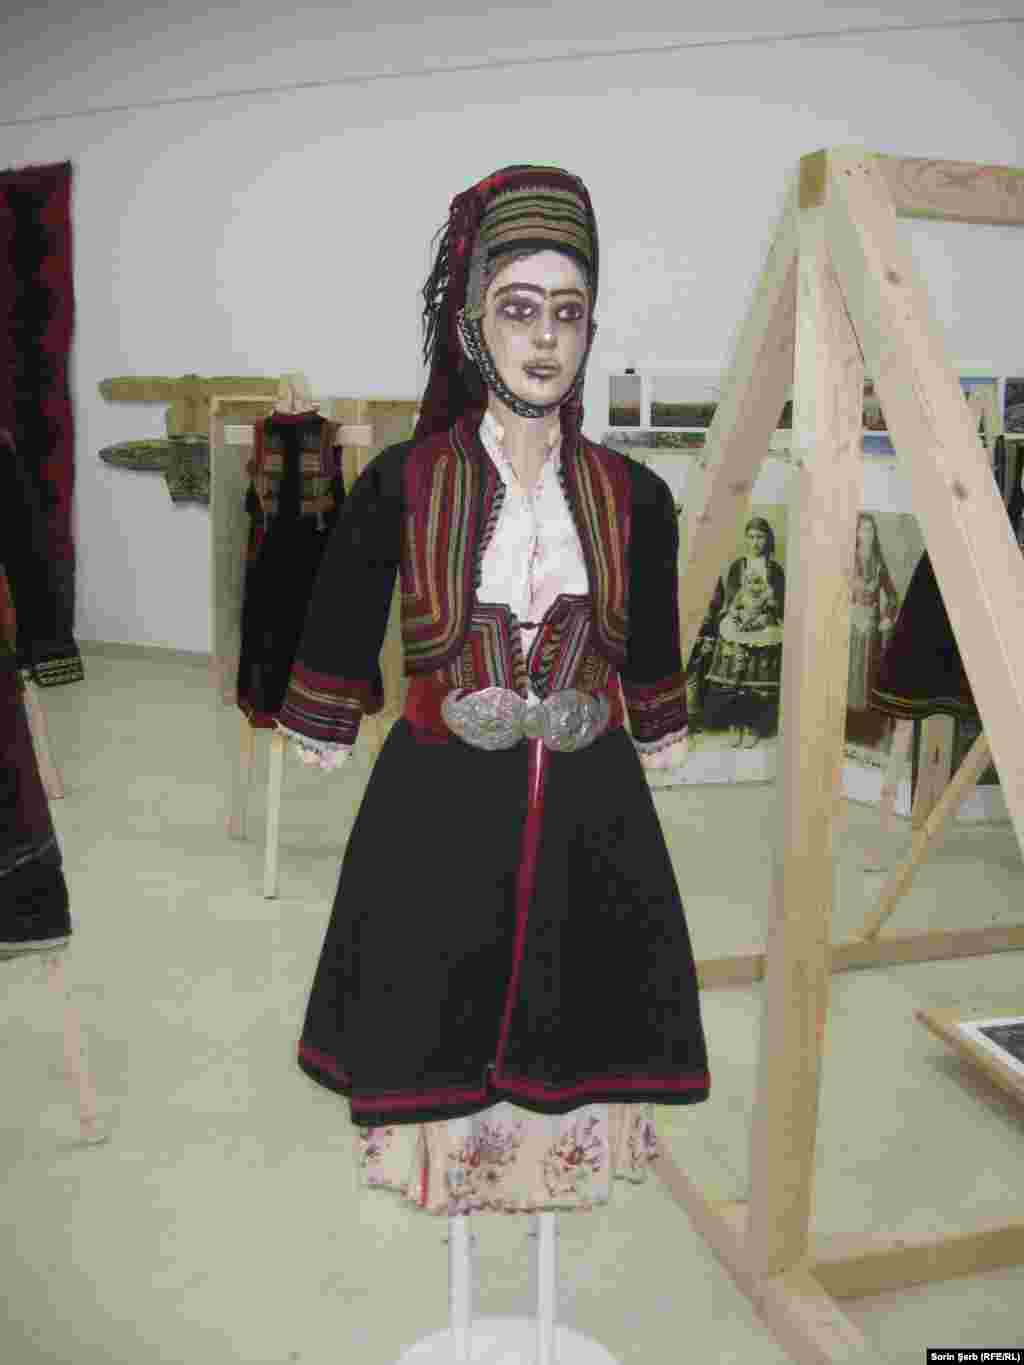 Costum femeiesc grămostenesc se compune din câmeași/ cămașă cu poale, origine Dupnița, Rila, bulgaria, încep. sec. XX, (colecția MȚR), cânduși/ sarafan, Dobrogea, sec. XX (colecția MȚR) mintanŭ/ vestă cu mâneci, Dobrogea, sec. XX, (colecția MȚR), câciulâ di șiacŭ cu mâyuri/ căciulă din aba cu lătițare, Dobrogea, sec. XX, ((colecția MȚR)), minghiuș di câciulâ/ cercel de tâmplă, podoabă pentru căciulă, (colecția Daniel Nancu), lâhurâ cu leasâ/ basma, (colecția&nbsp; Daniel Nancu pafta &bdquo;lacrimi&rdquo;, pe cordon catifea creație contemporară, (colecția Daniel Nancu) &nbsp;